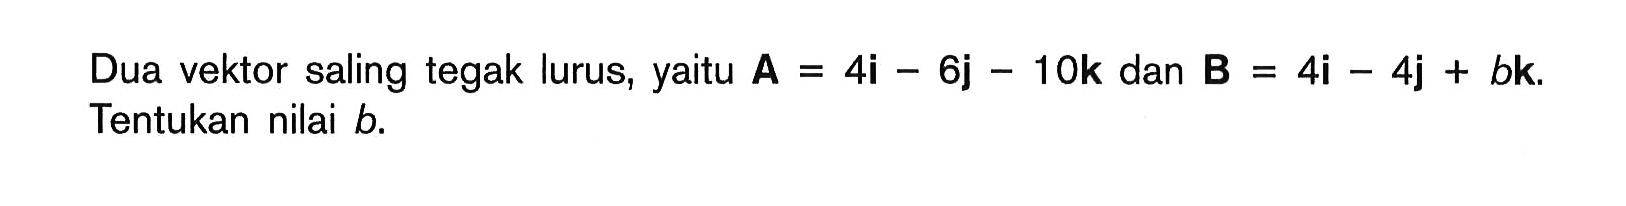 Dua vektor saling tegak lurus, yaitu A.= 4i - 6j - 10k dan B.= 4i - 4j + bk Tentukan nilai b.